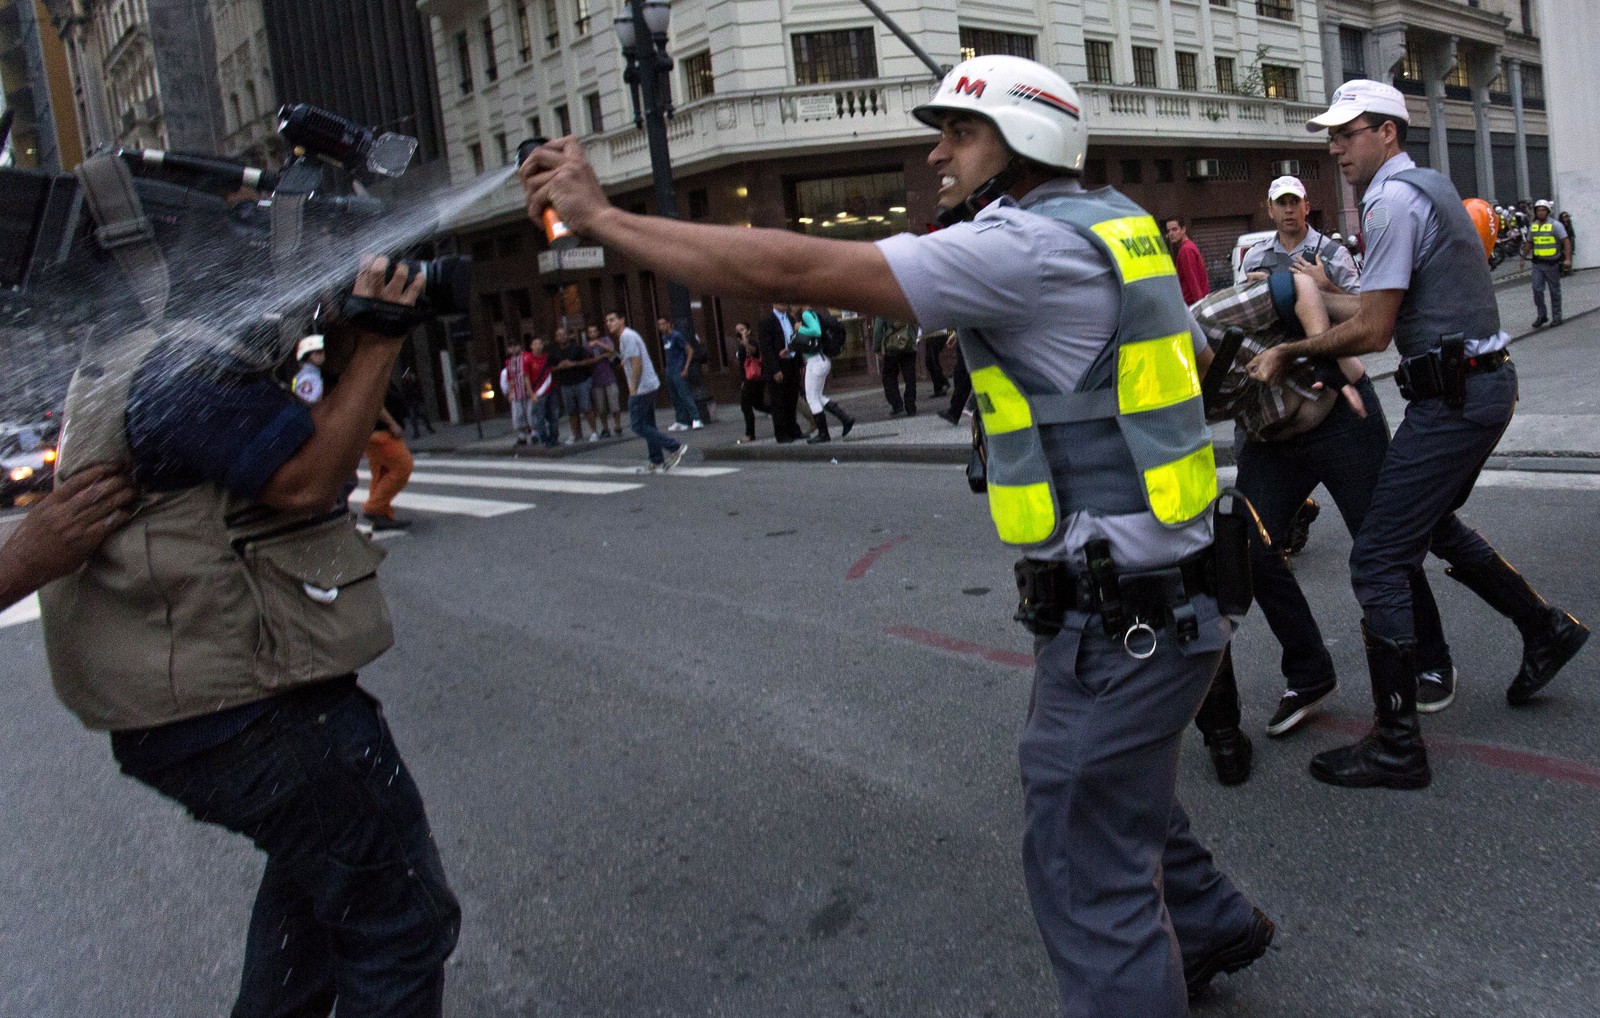 Policial militar atinge cinegrafista com spray de pimenta durante protesto contra o aumento da tarifa do transporte urbano em frente ao Teatro Municipal, no centro de São Paulo, em 13 de junho de 2013 — Foto: RODRIGO PAIVA / ESTADÃO CONTEÚDO